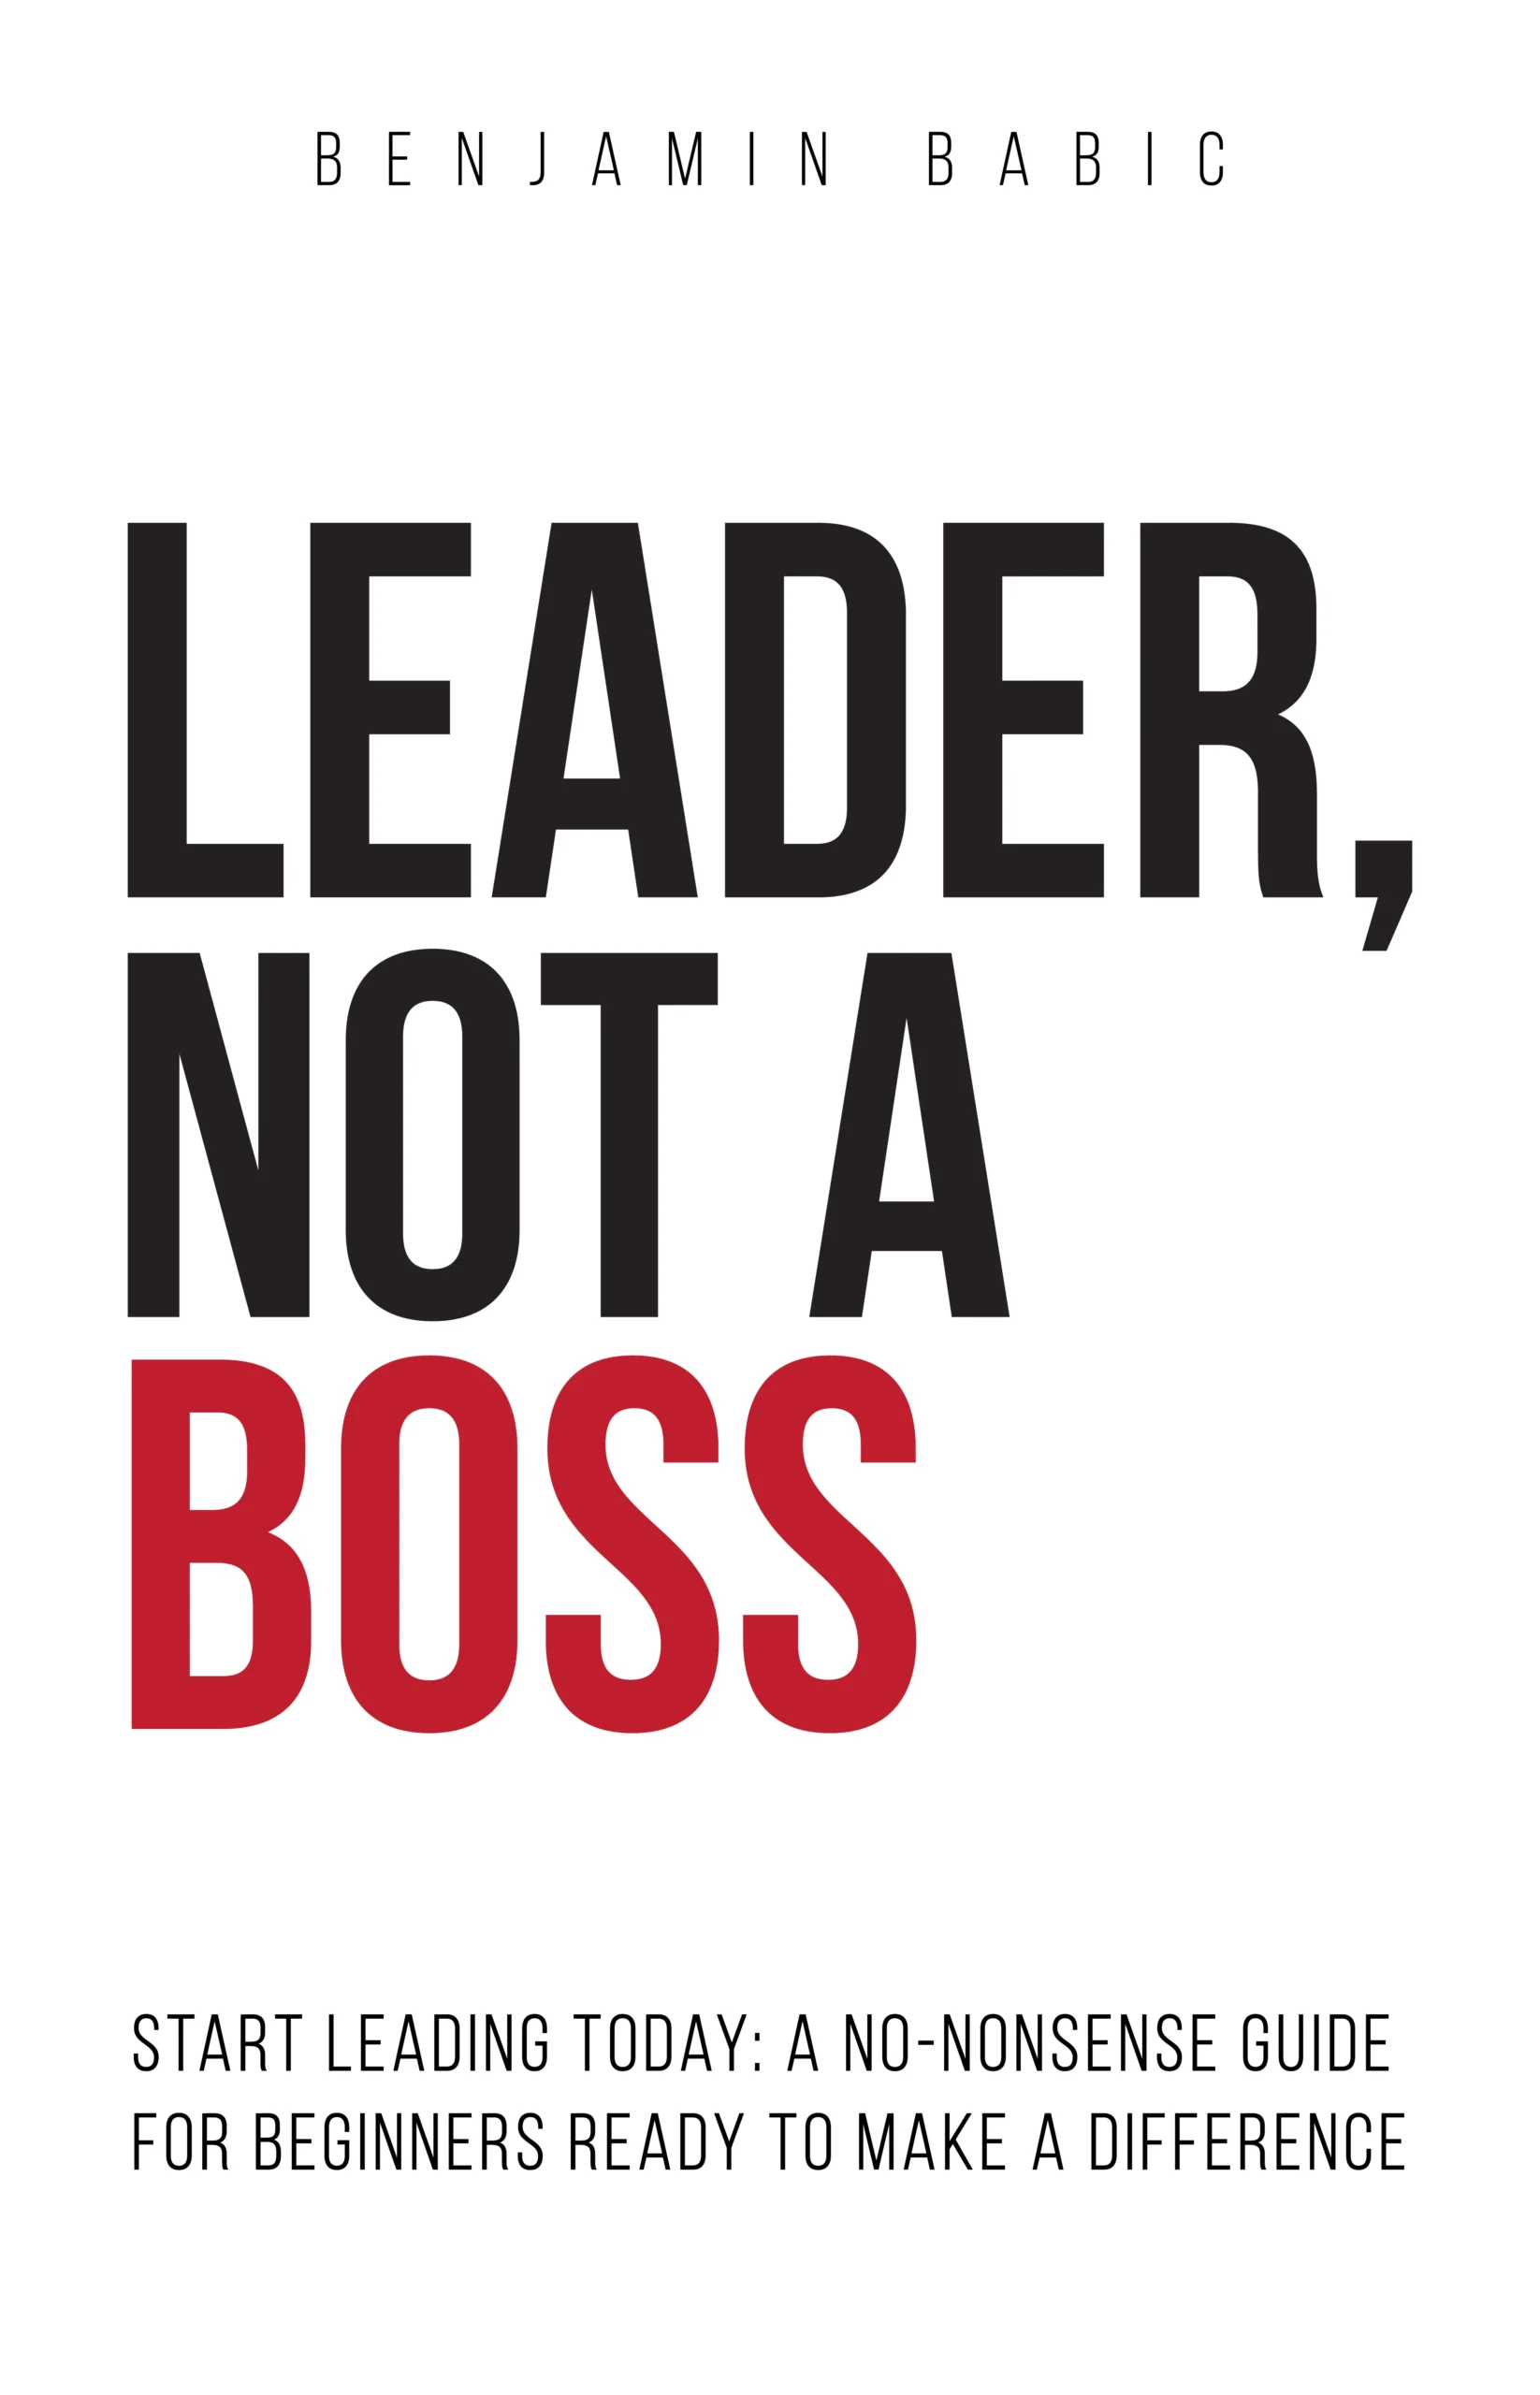 Leader, Not a Boss